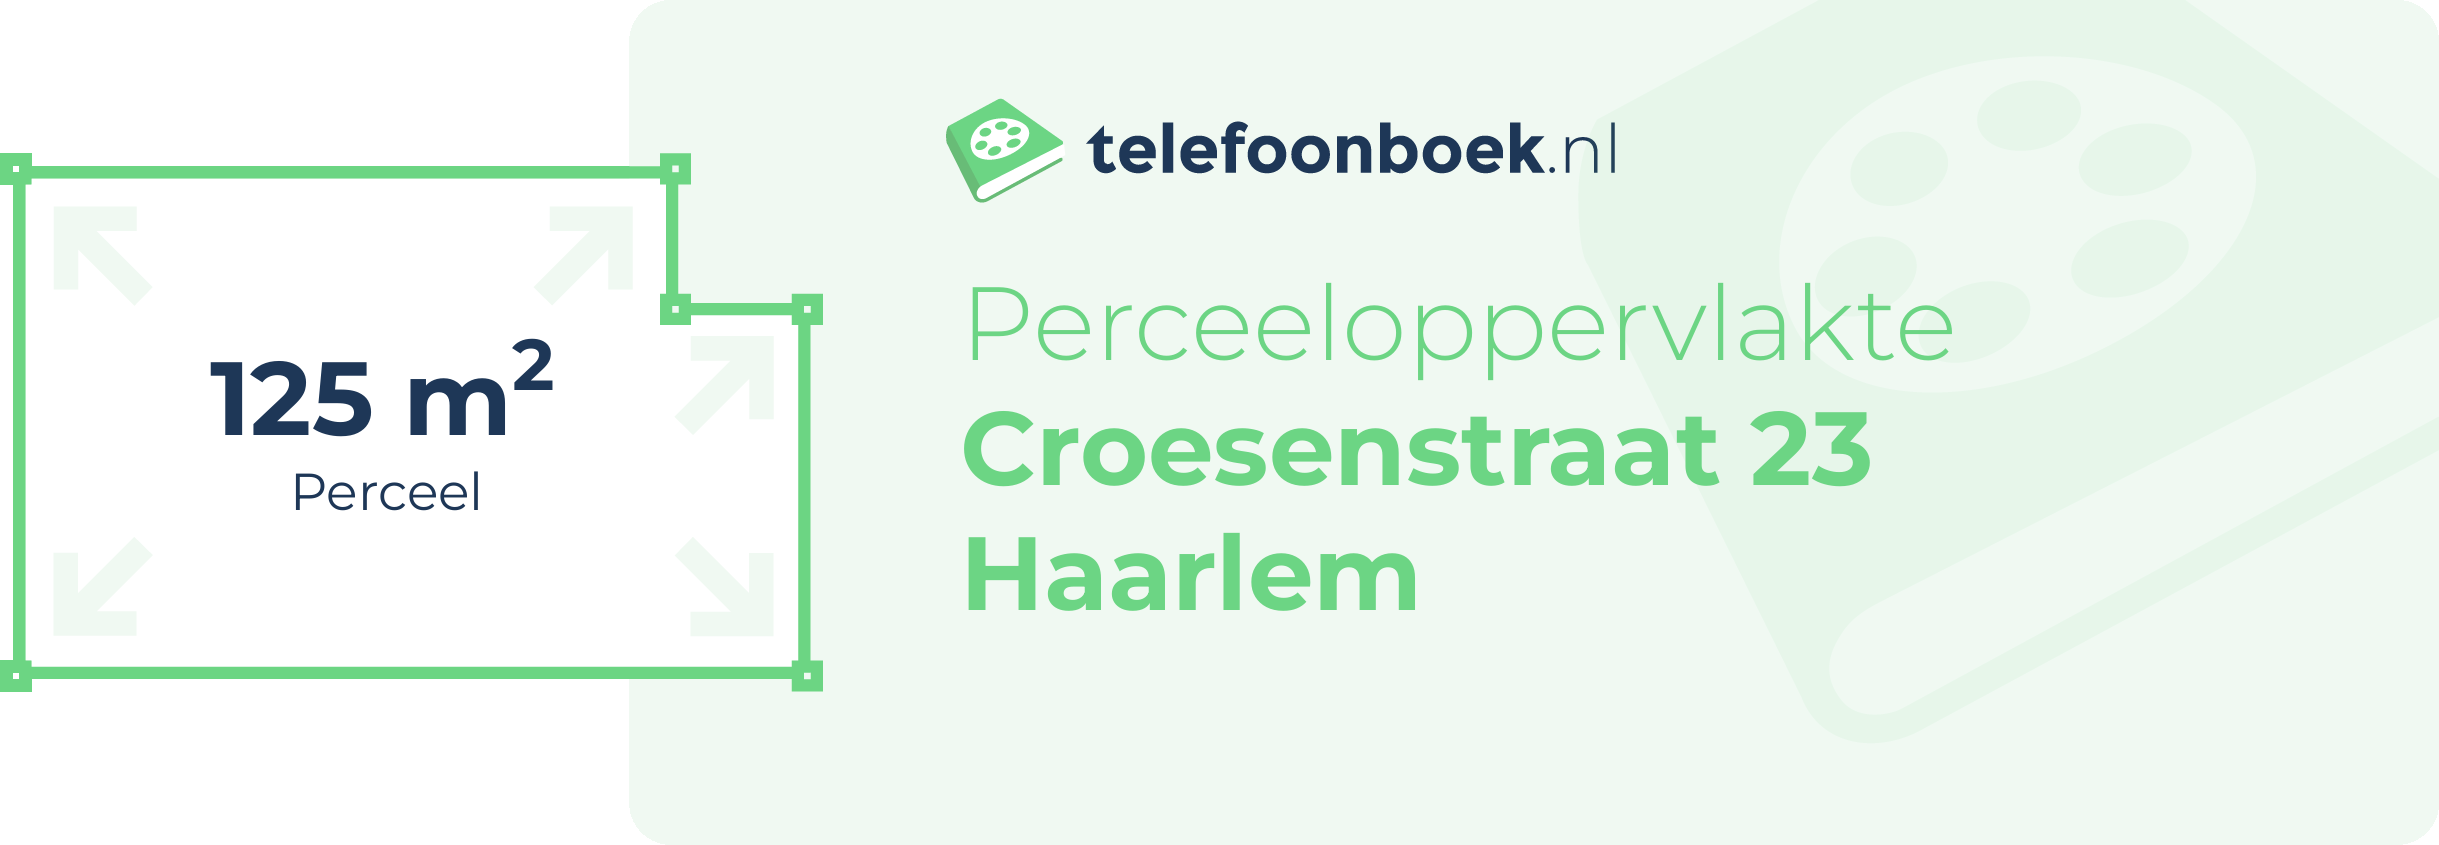 Perceeloppervlakte Croesenstraat 23 Haarlem